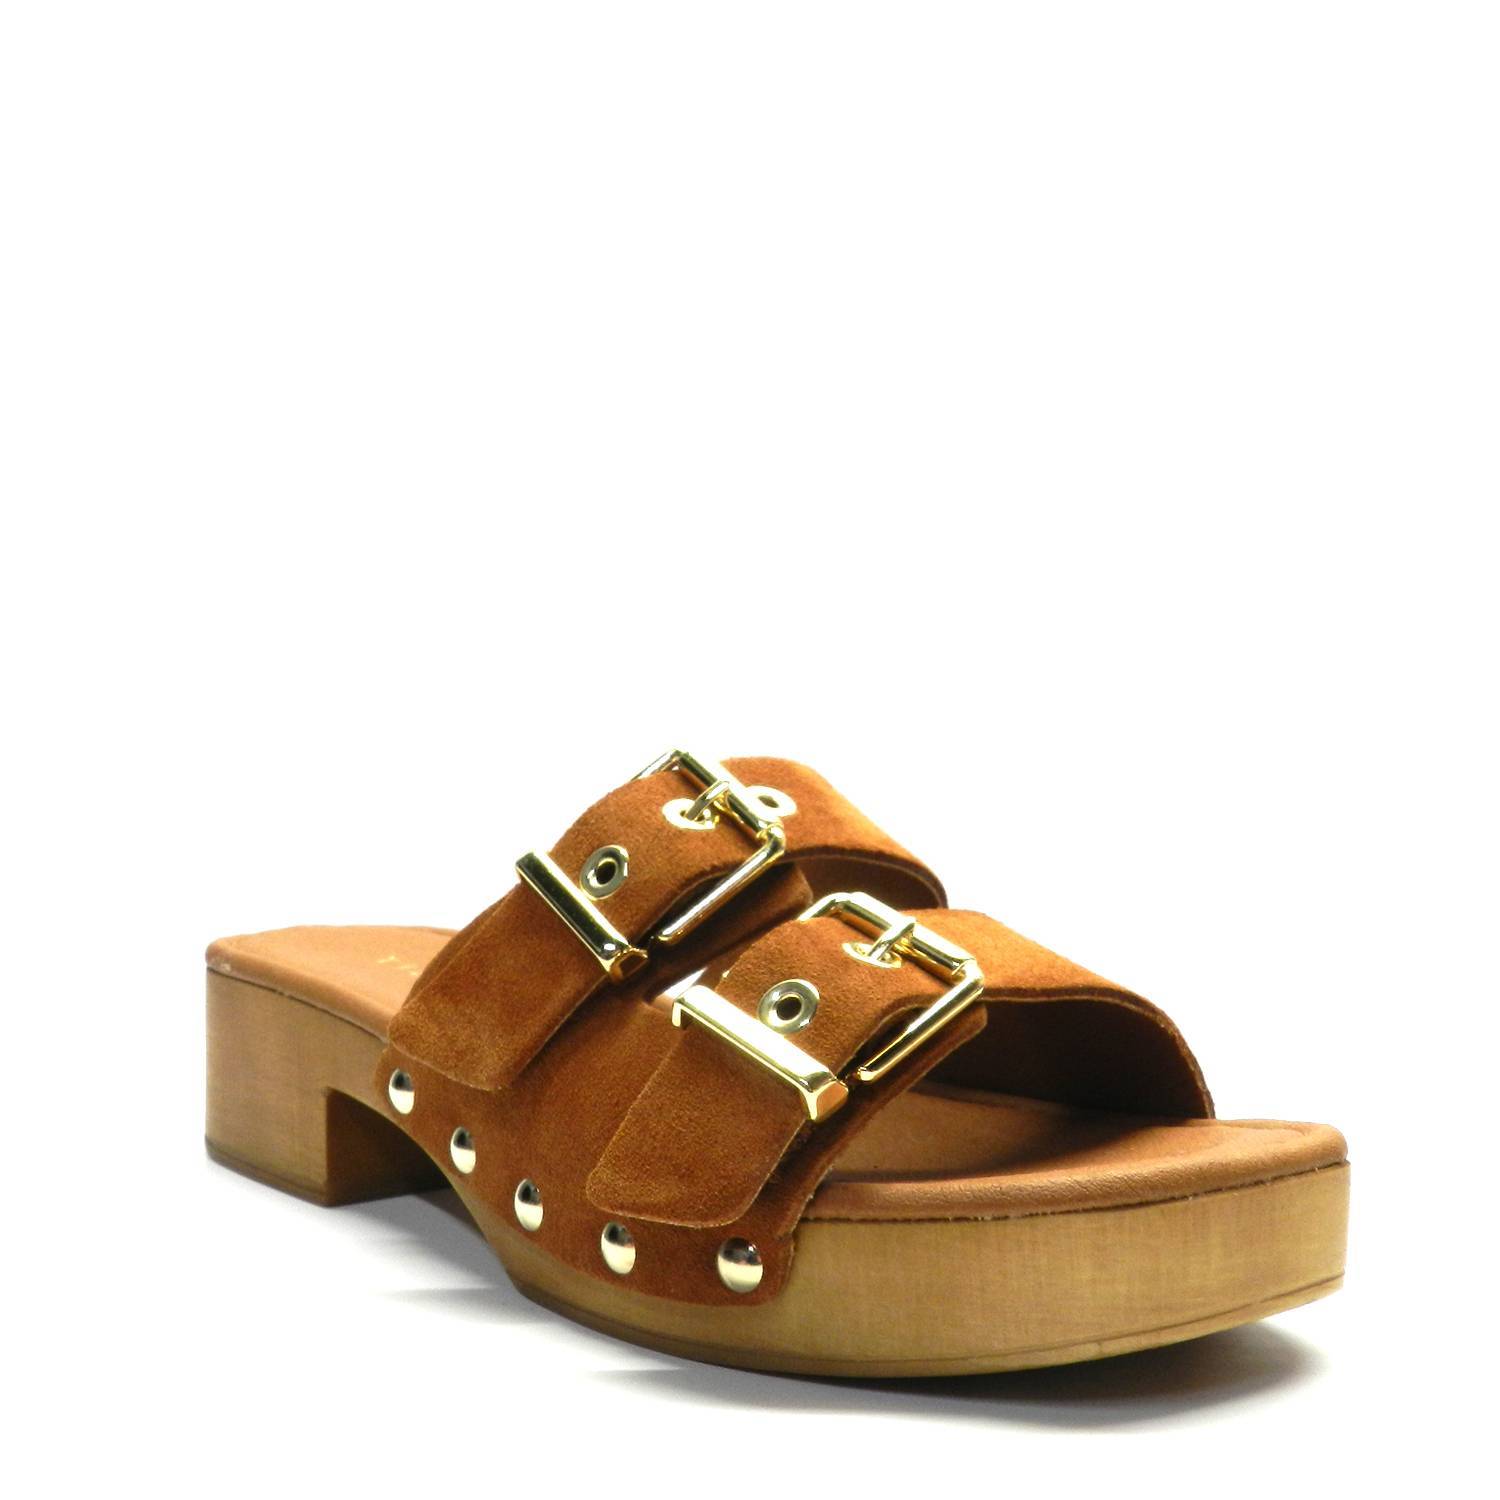 Sandalia de la marca Tiziana modelo Country en ante color cuero. Chancla con dos hebillas y tachuelas metalizadas. Suela de madera flexible y resistente.